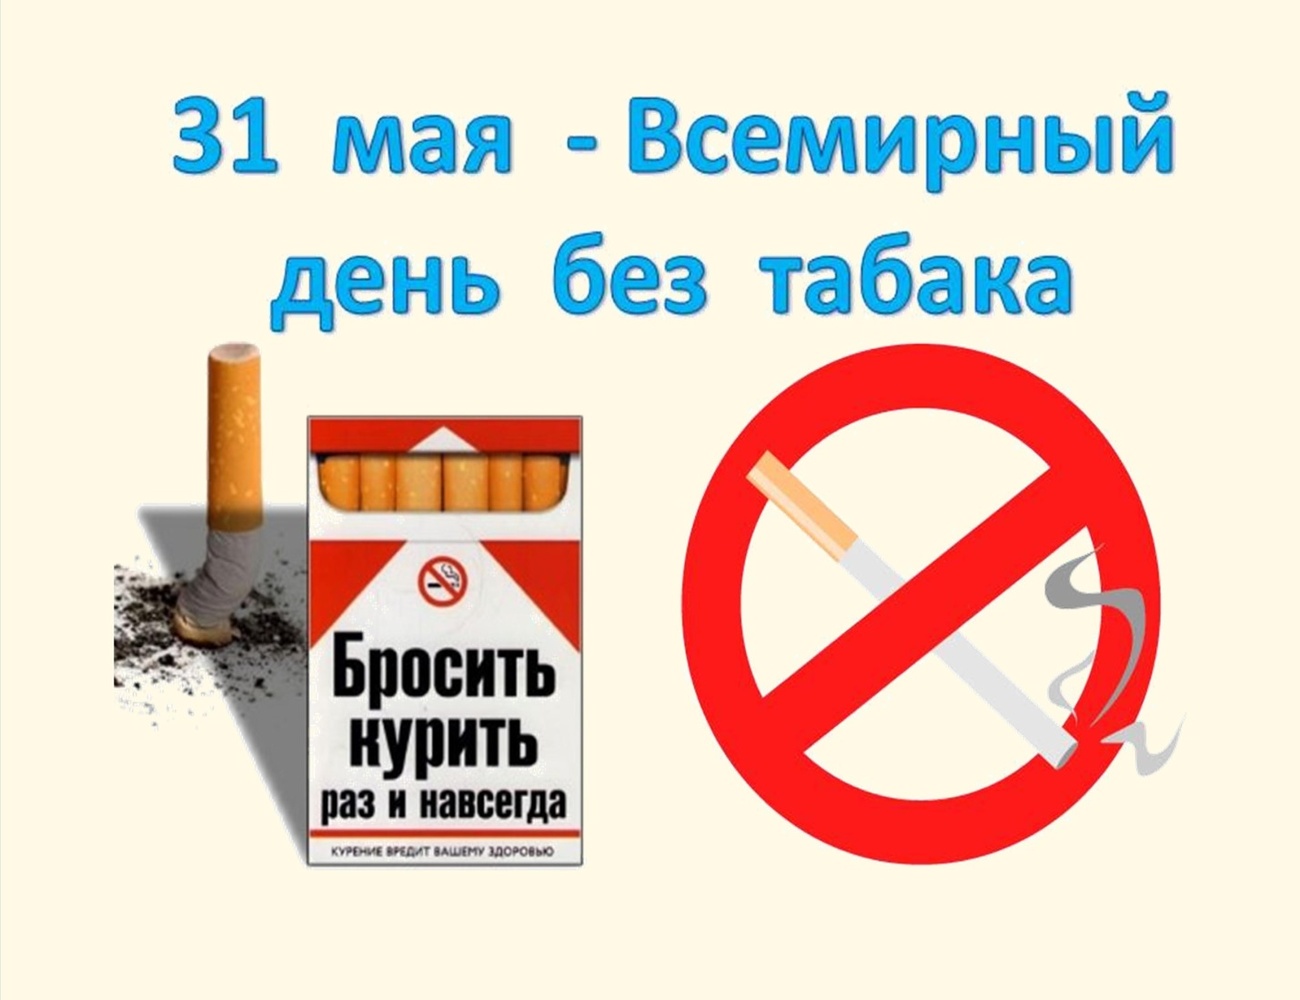 Картинка с предупреждением на всемирный день без табака